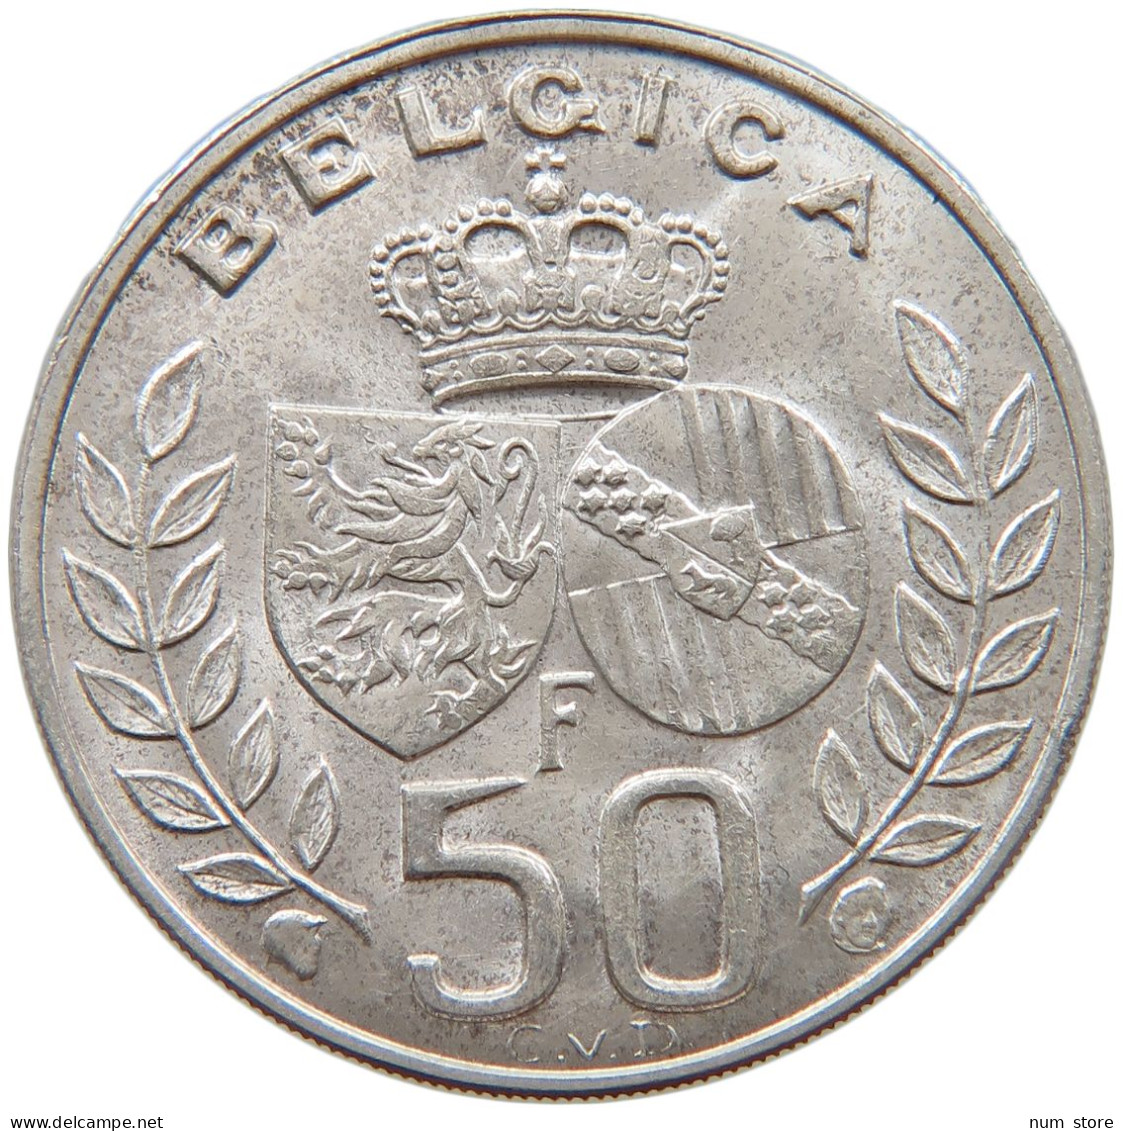 BELGIUM 50 FRANCS 1960 BADOUIN I. 1951-1993 #c049 0261 - 50 Francs